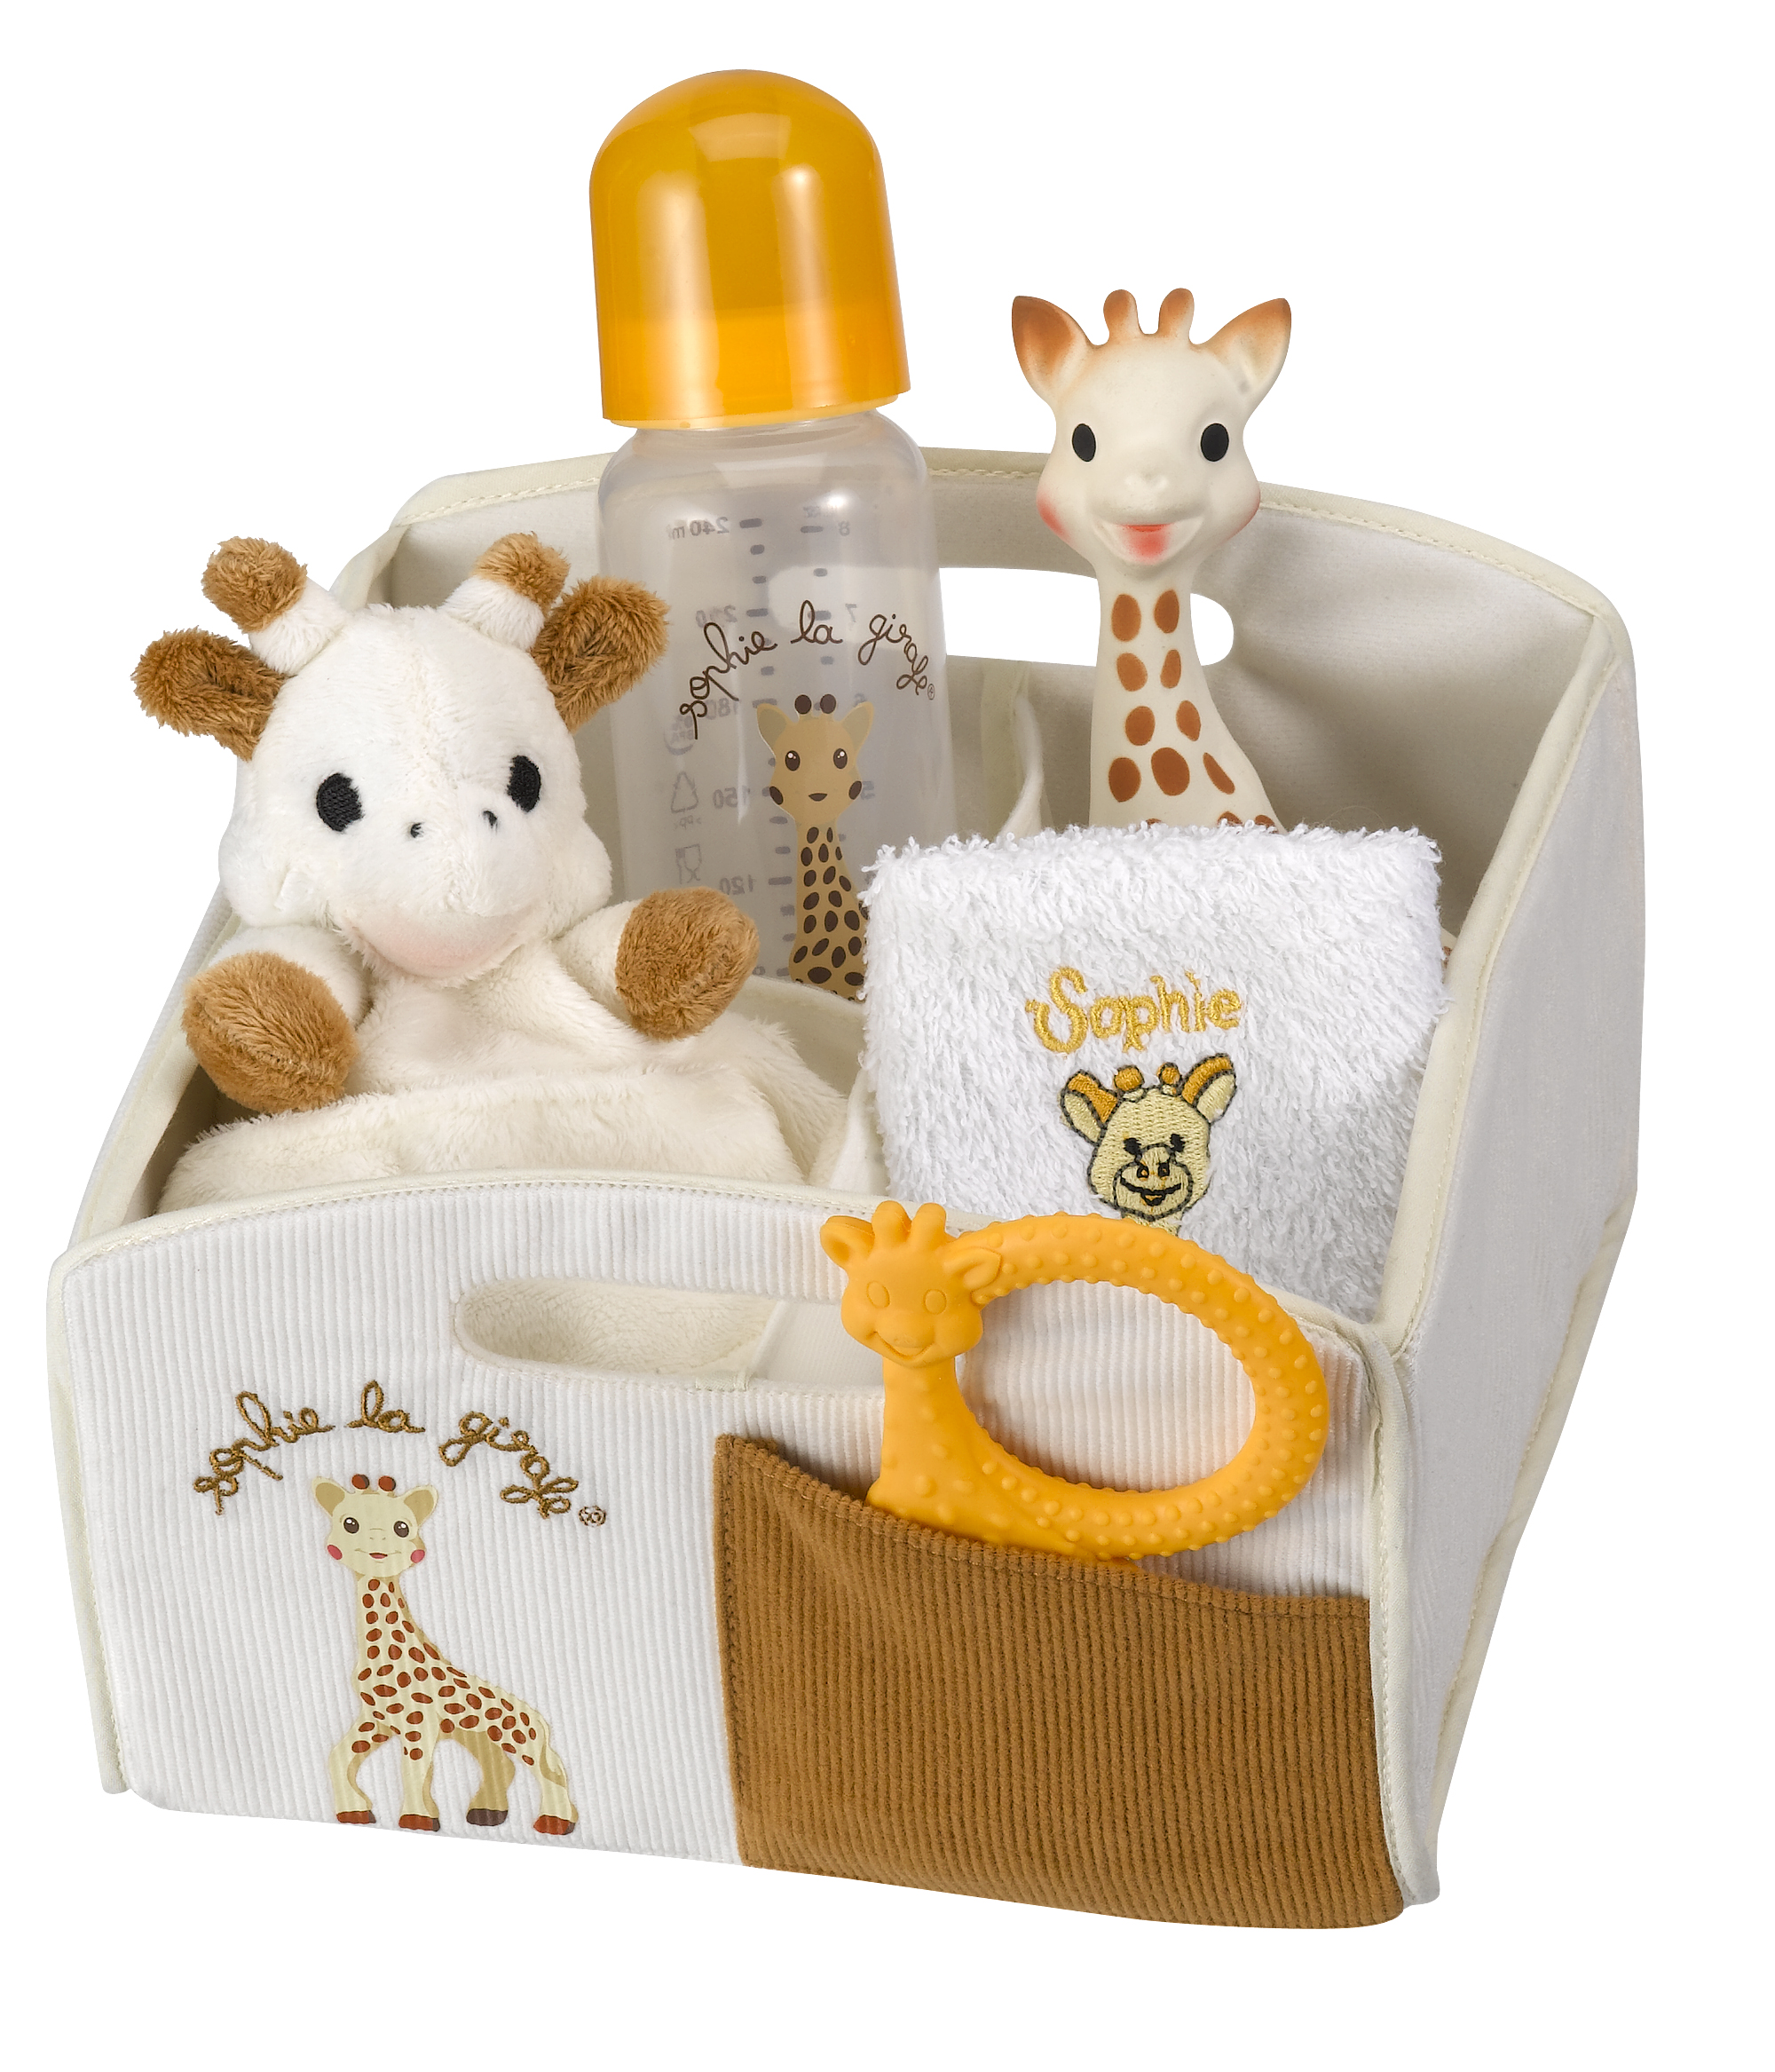 Coffret naissance Sophie'doux couverture bébé et Sophie la girafe